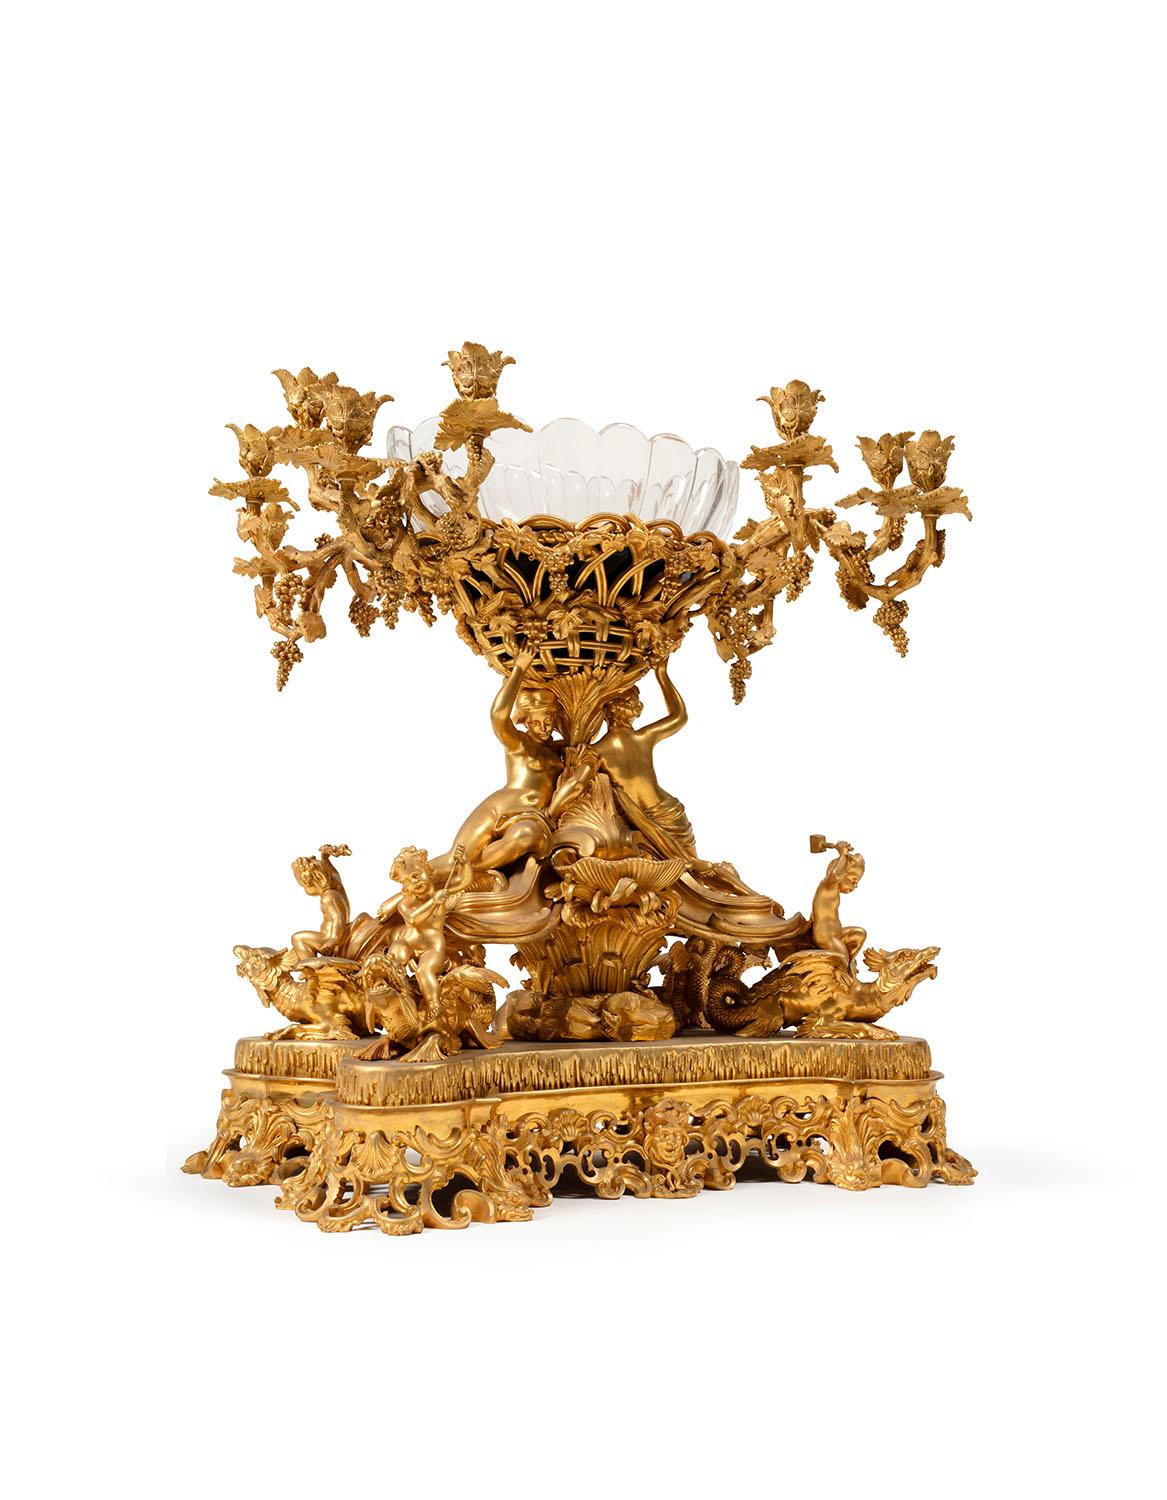 Surtout de table  vergoldete Bronze im Stil Louis XVI nach dem Werk von GOUTHIERE
Dieses hochwertige Werk ist ein Meisterwerk eines Pariser Bronzierers seiner Zeit, wahrscheinlich von einem der besten Namen dieser Zeit. Die Feinheit der Ausführung